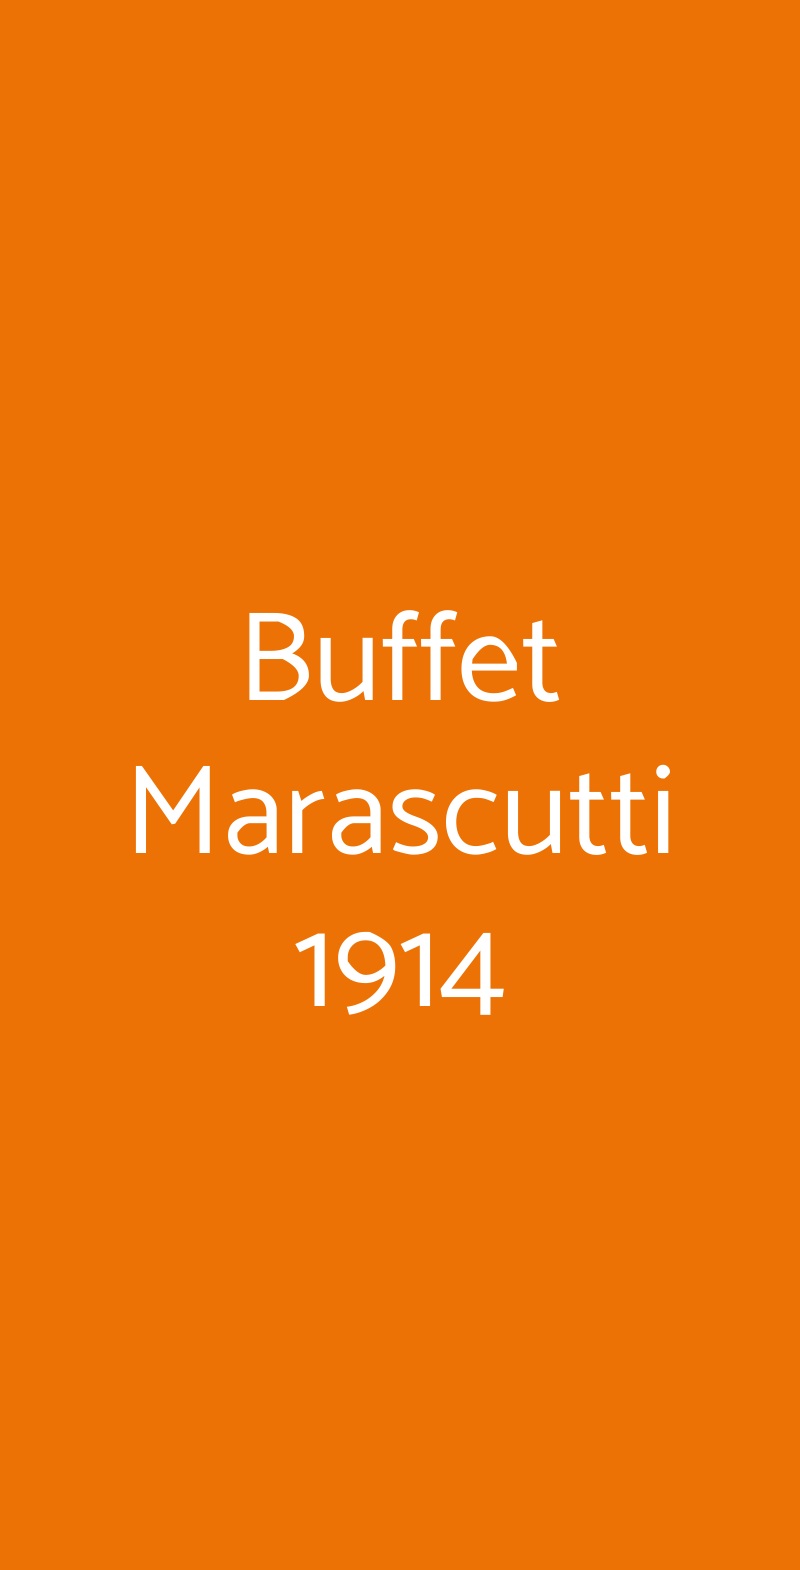 Buffet Marascutti 1914 Trieste menù 1 pagina